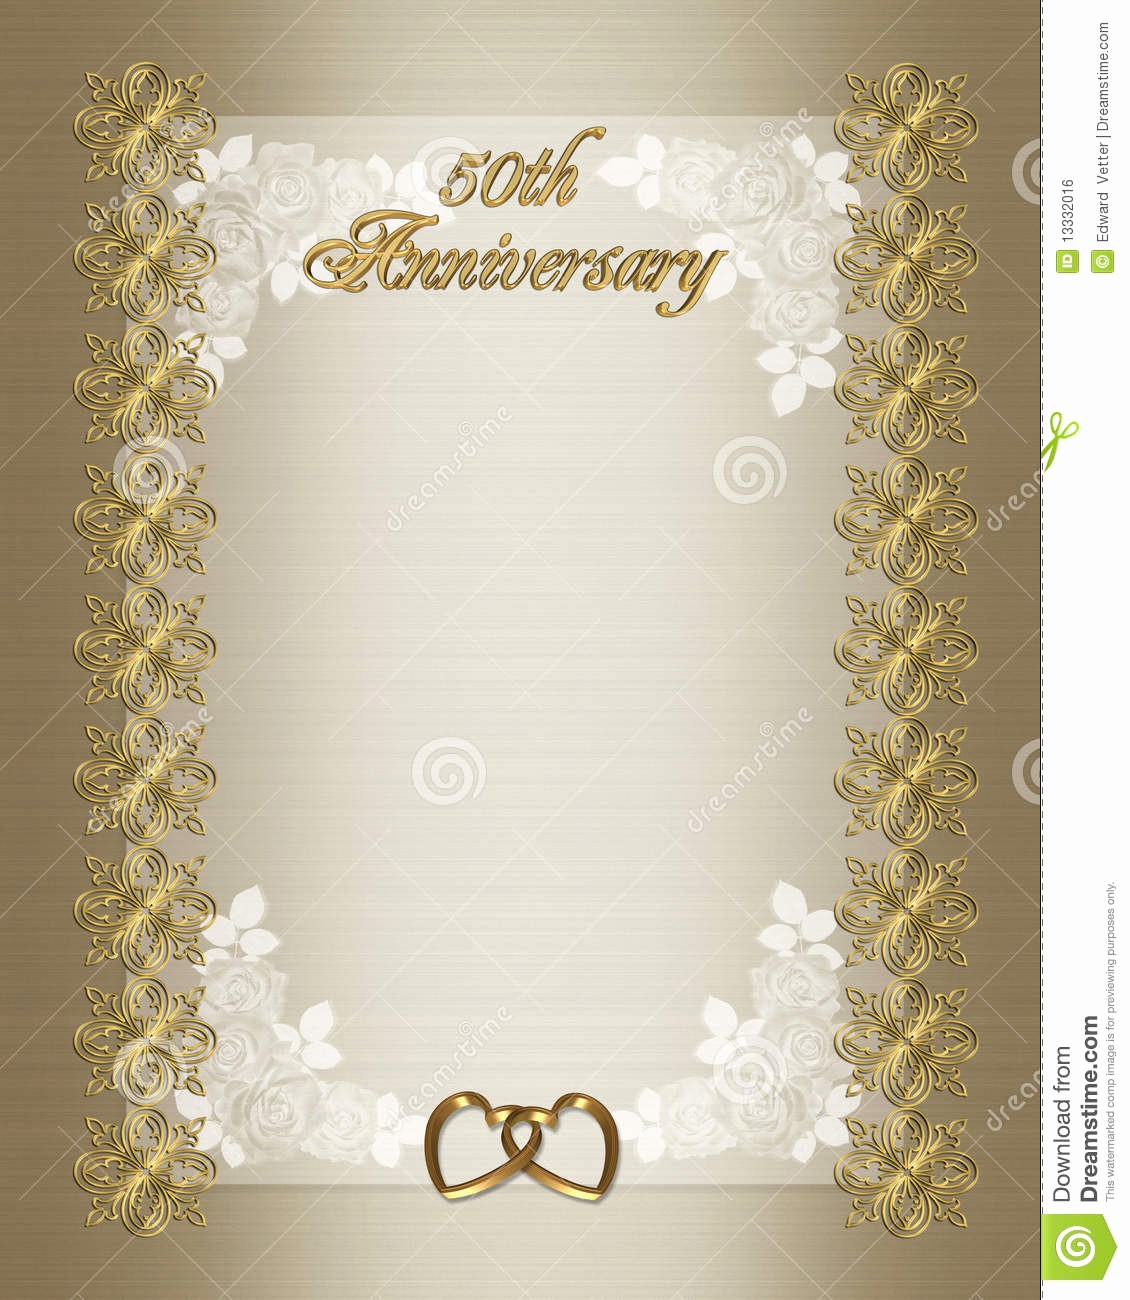 Moldes Para Convites De Aniversario Lovely 50th Molde Do Convite Do Aniversário De Casamento